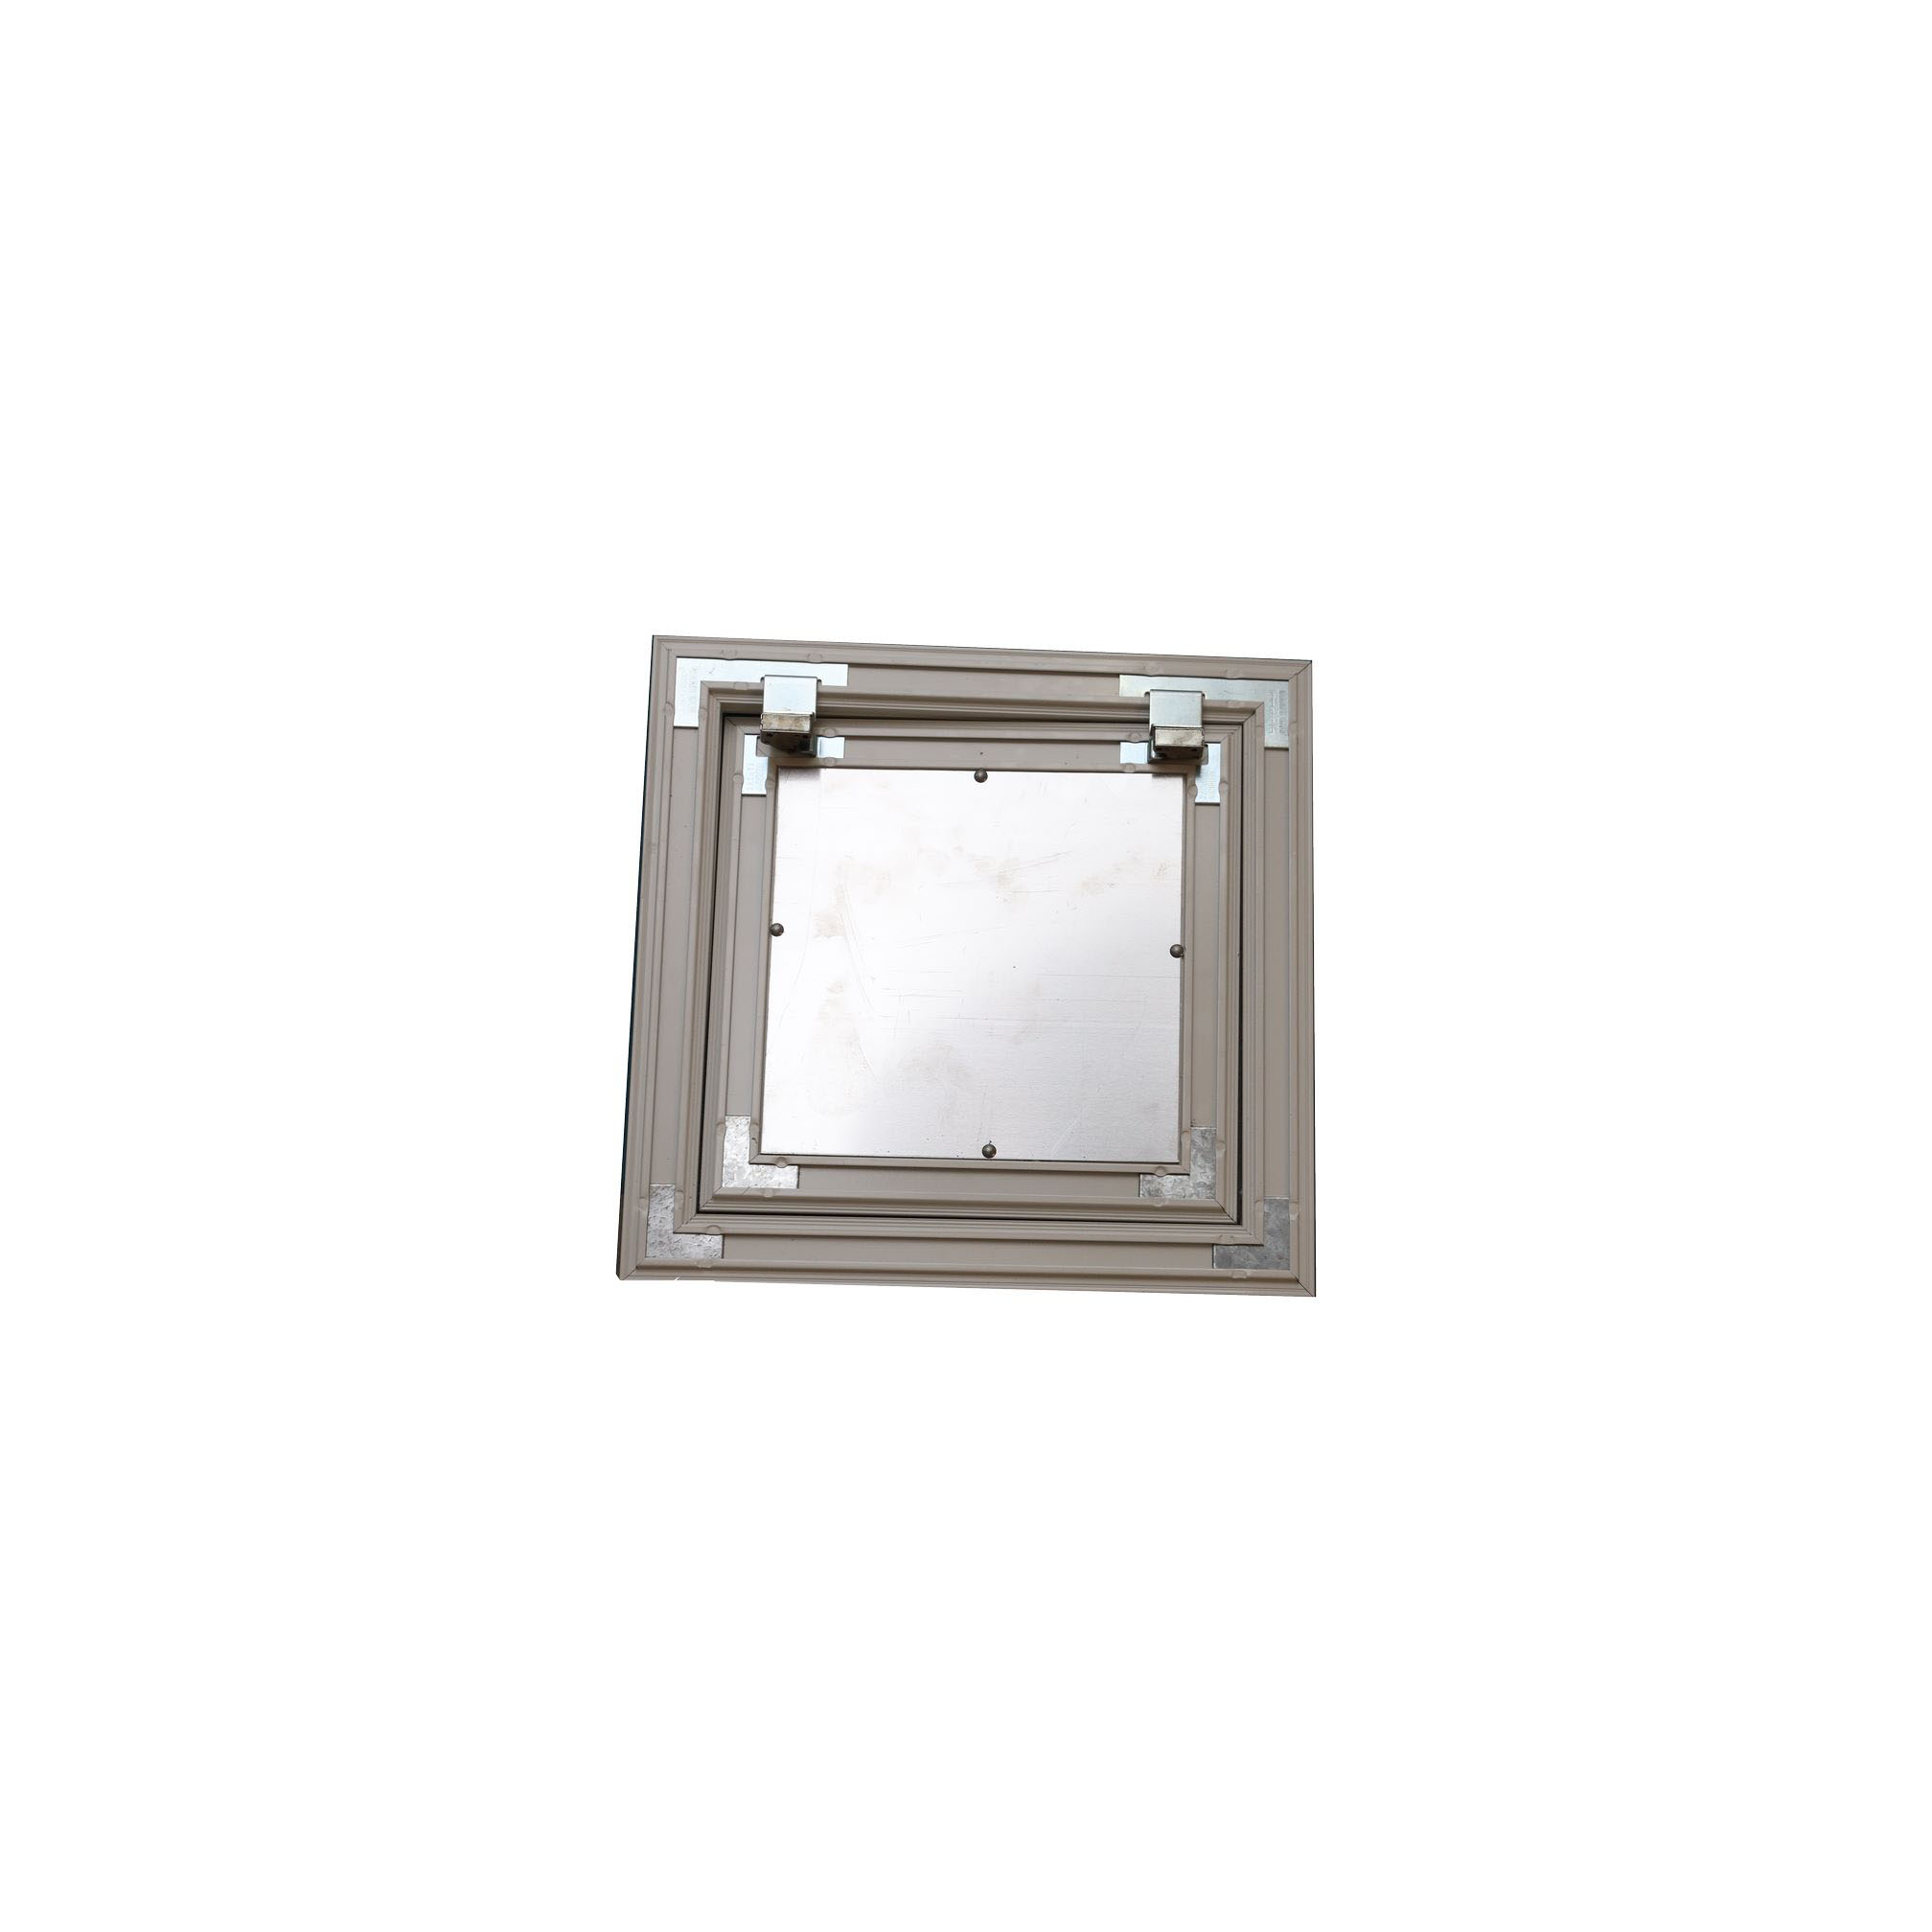 Ceiling Access Door - Aluminium - 30 X 30Cm